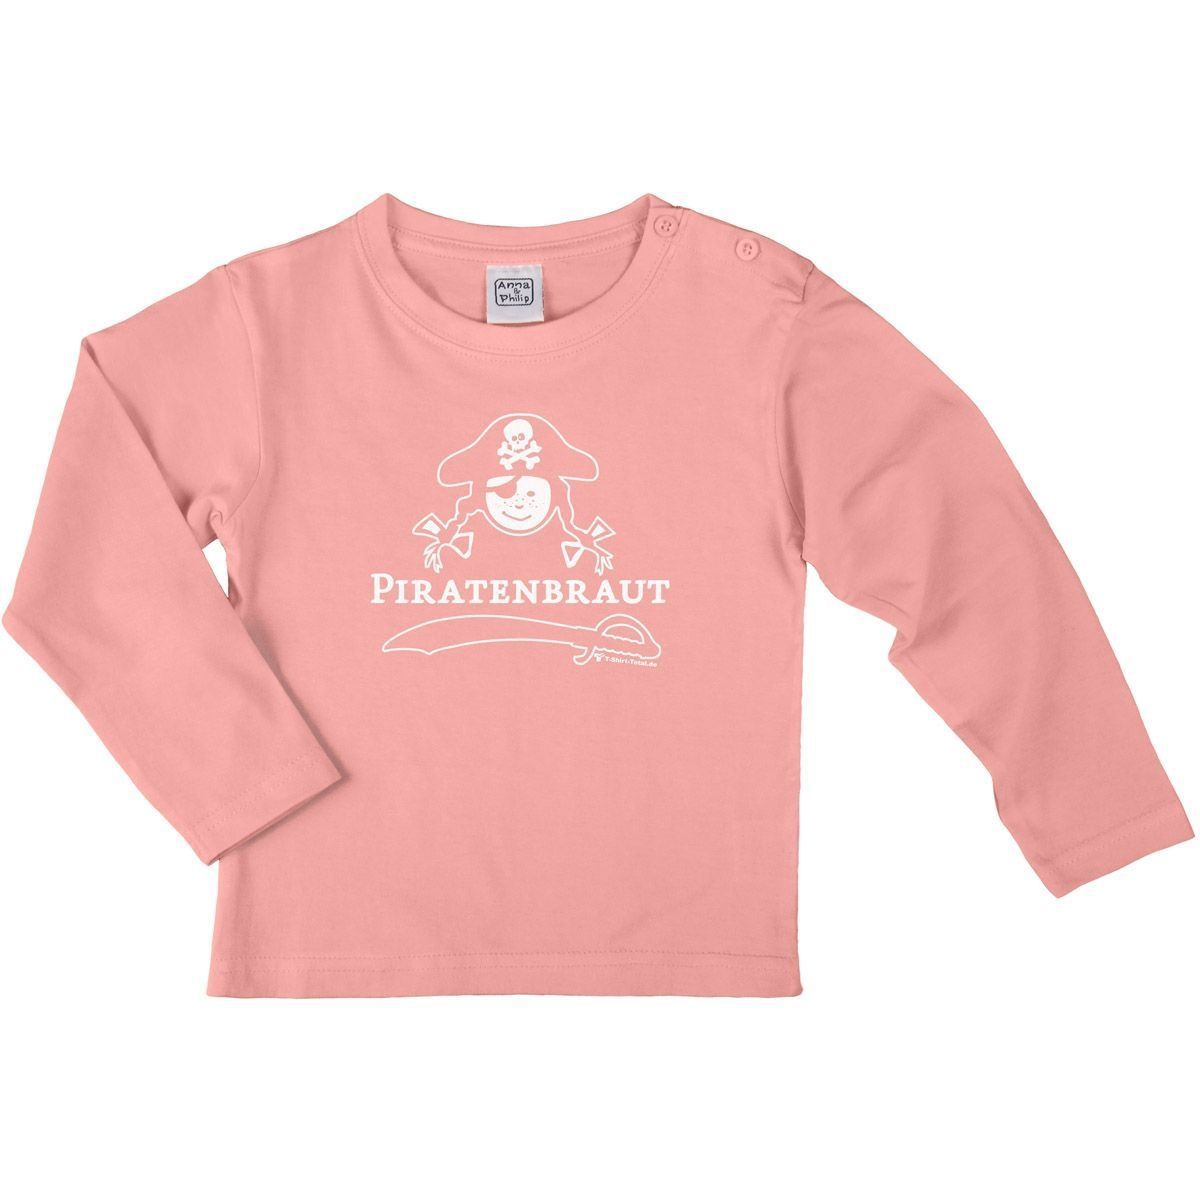 Piratenbraut Kinder Langarm Shirt rosa 110 / 116